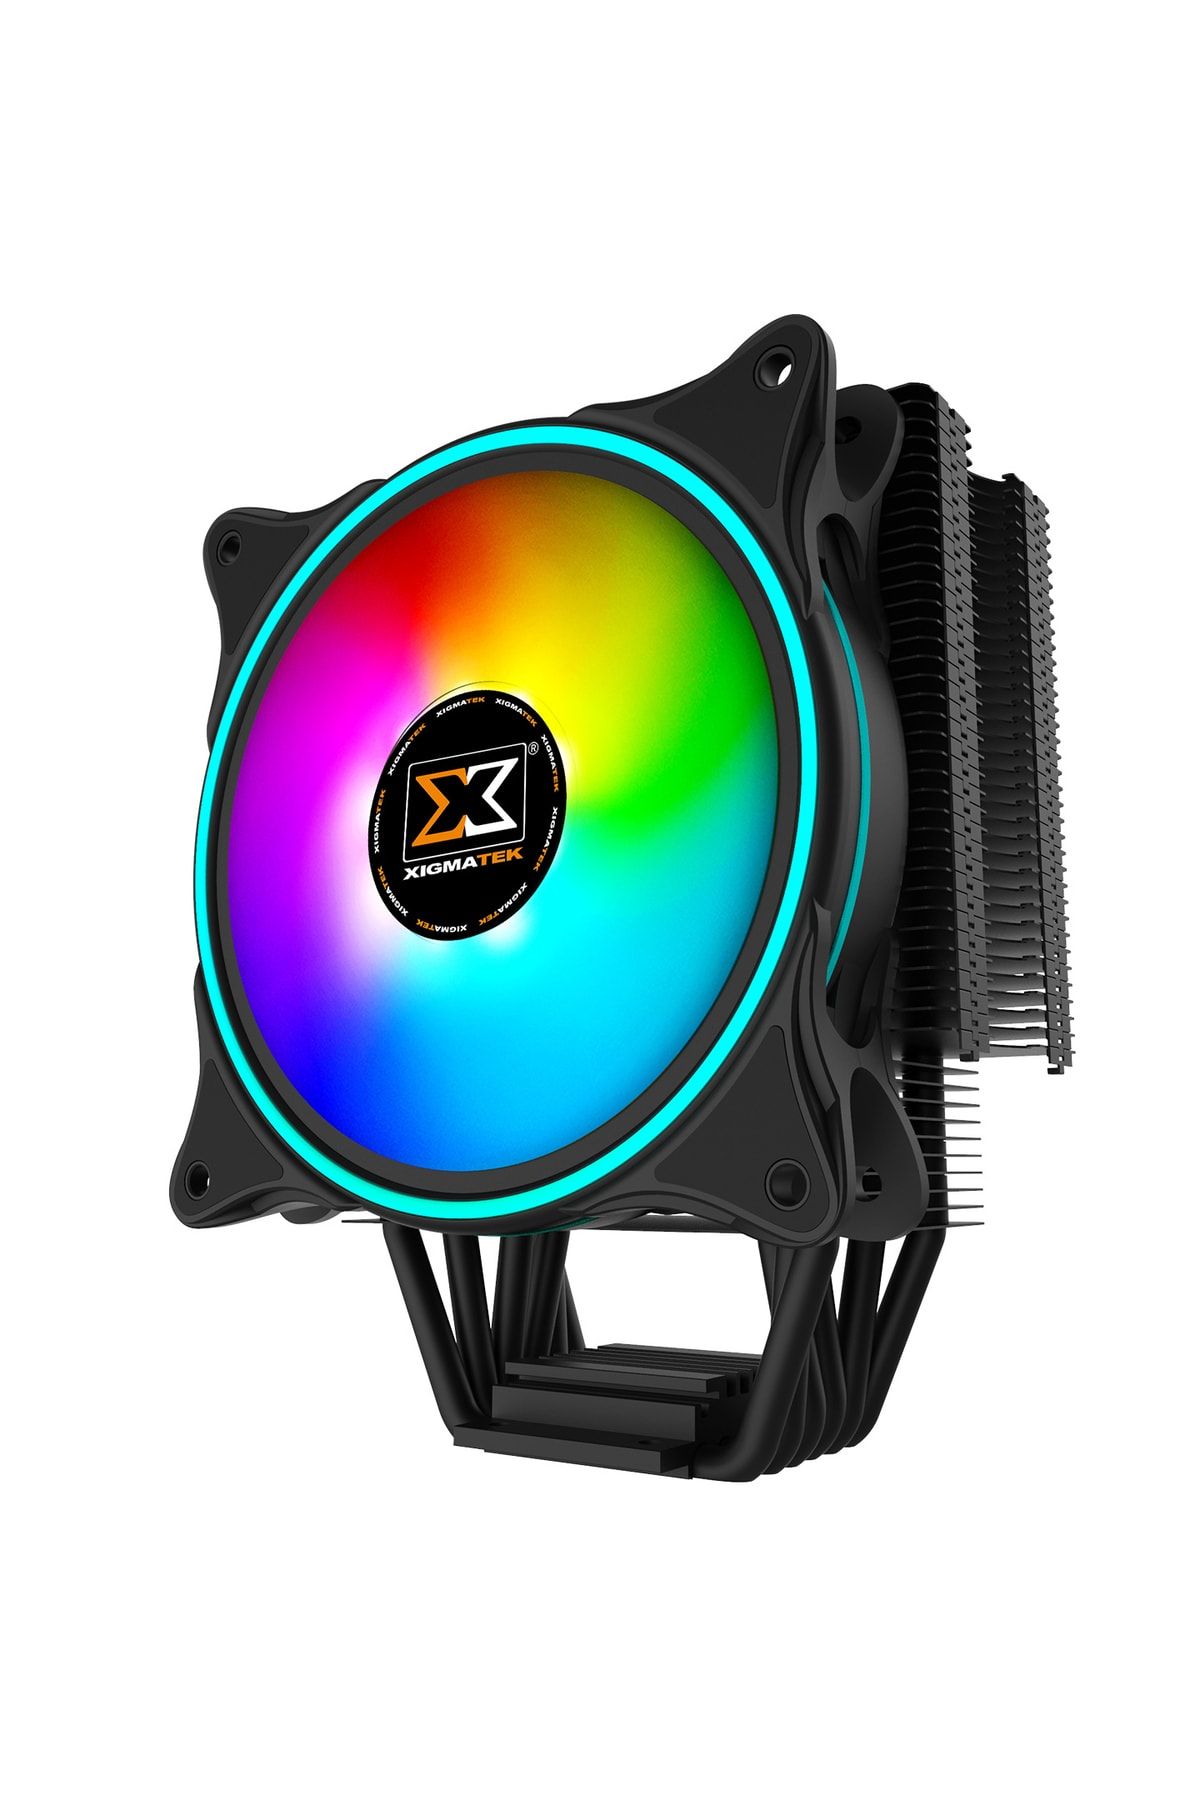 Xigmatek Windpower Wp 1266 En42388 Intel/amd Tümü 120mm At120 Rainbow Pwm Fan Fan Cpu Soğutucu